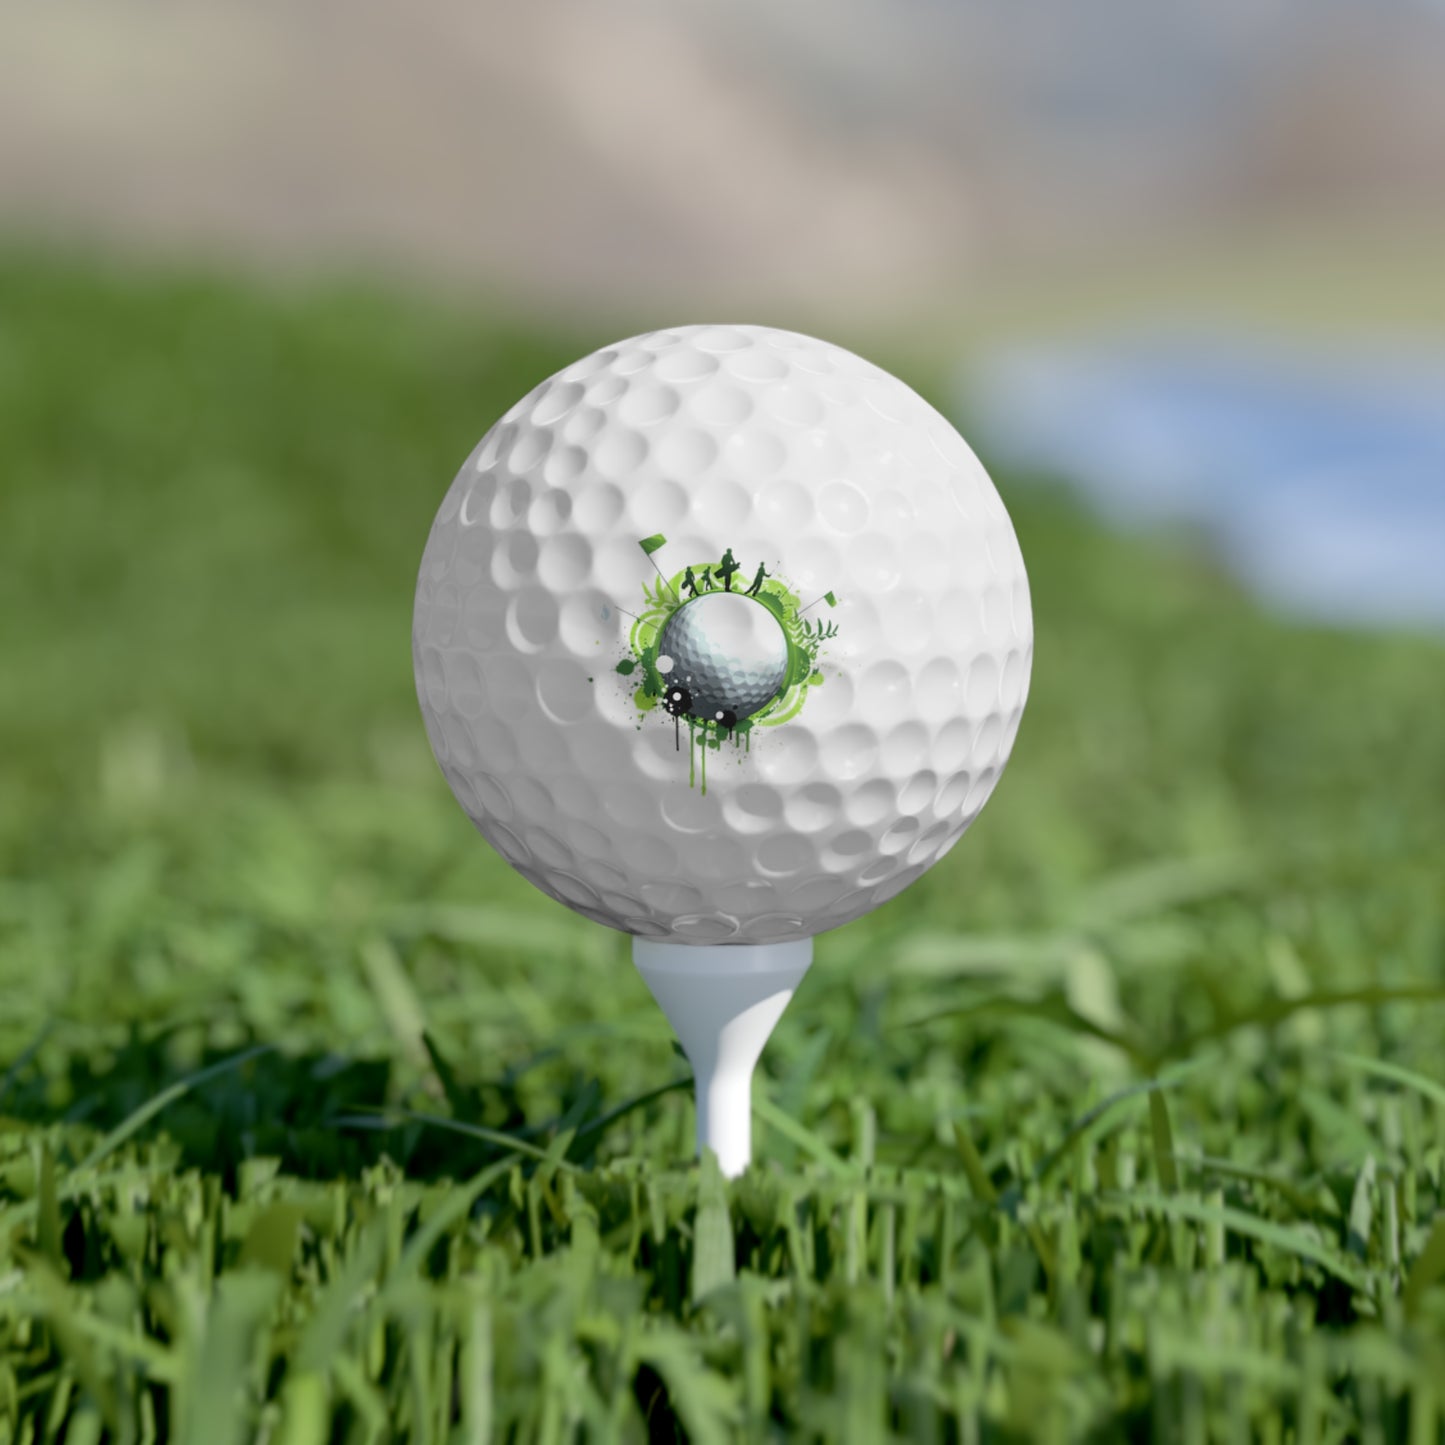 golf ball , Golf Balls, 6pcs